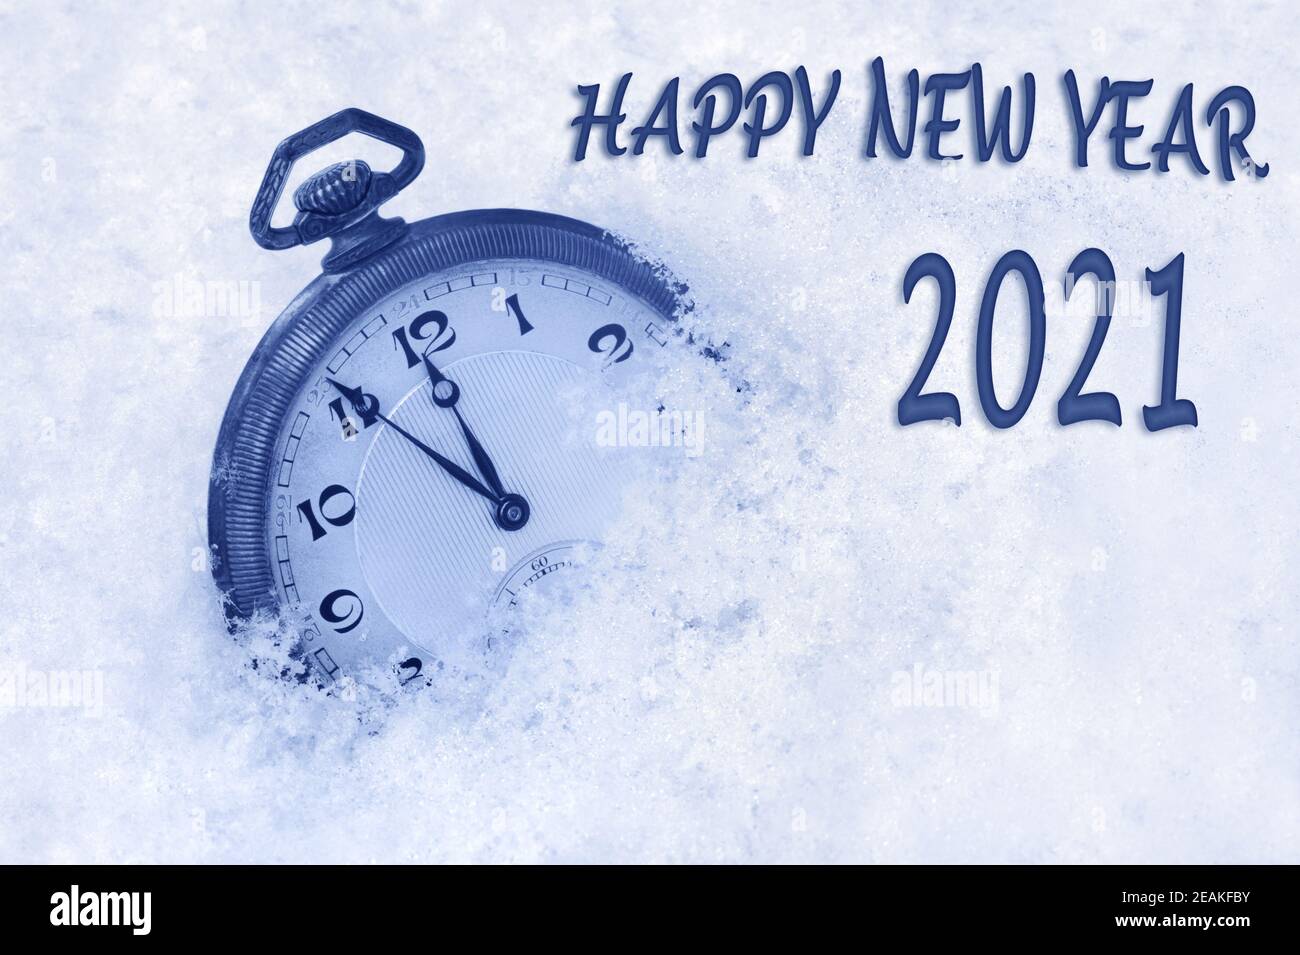 Frohes neues Jahr Karte, Neujahrsgrüße 2021 in englischer Sprache, Taschenuhr im Schnee, frohes neues Jahr 2021 Text, Countdown bis Mitternacht Stockfoto